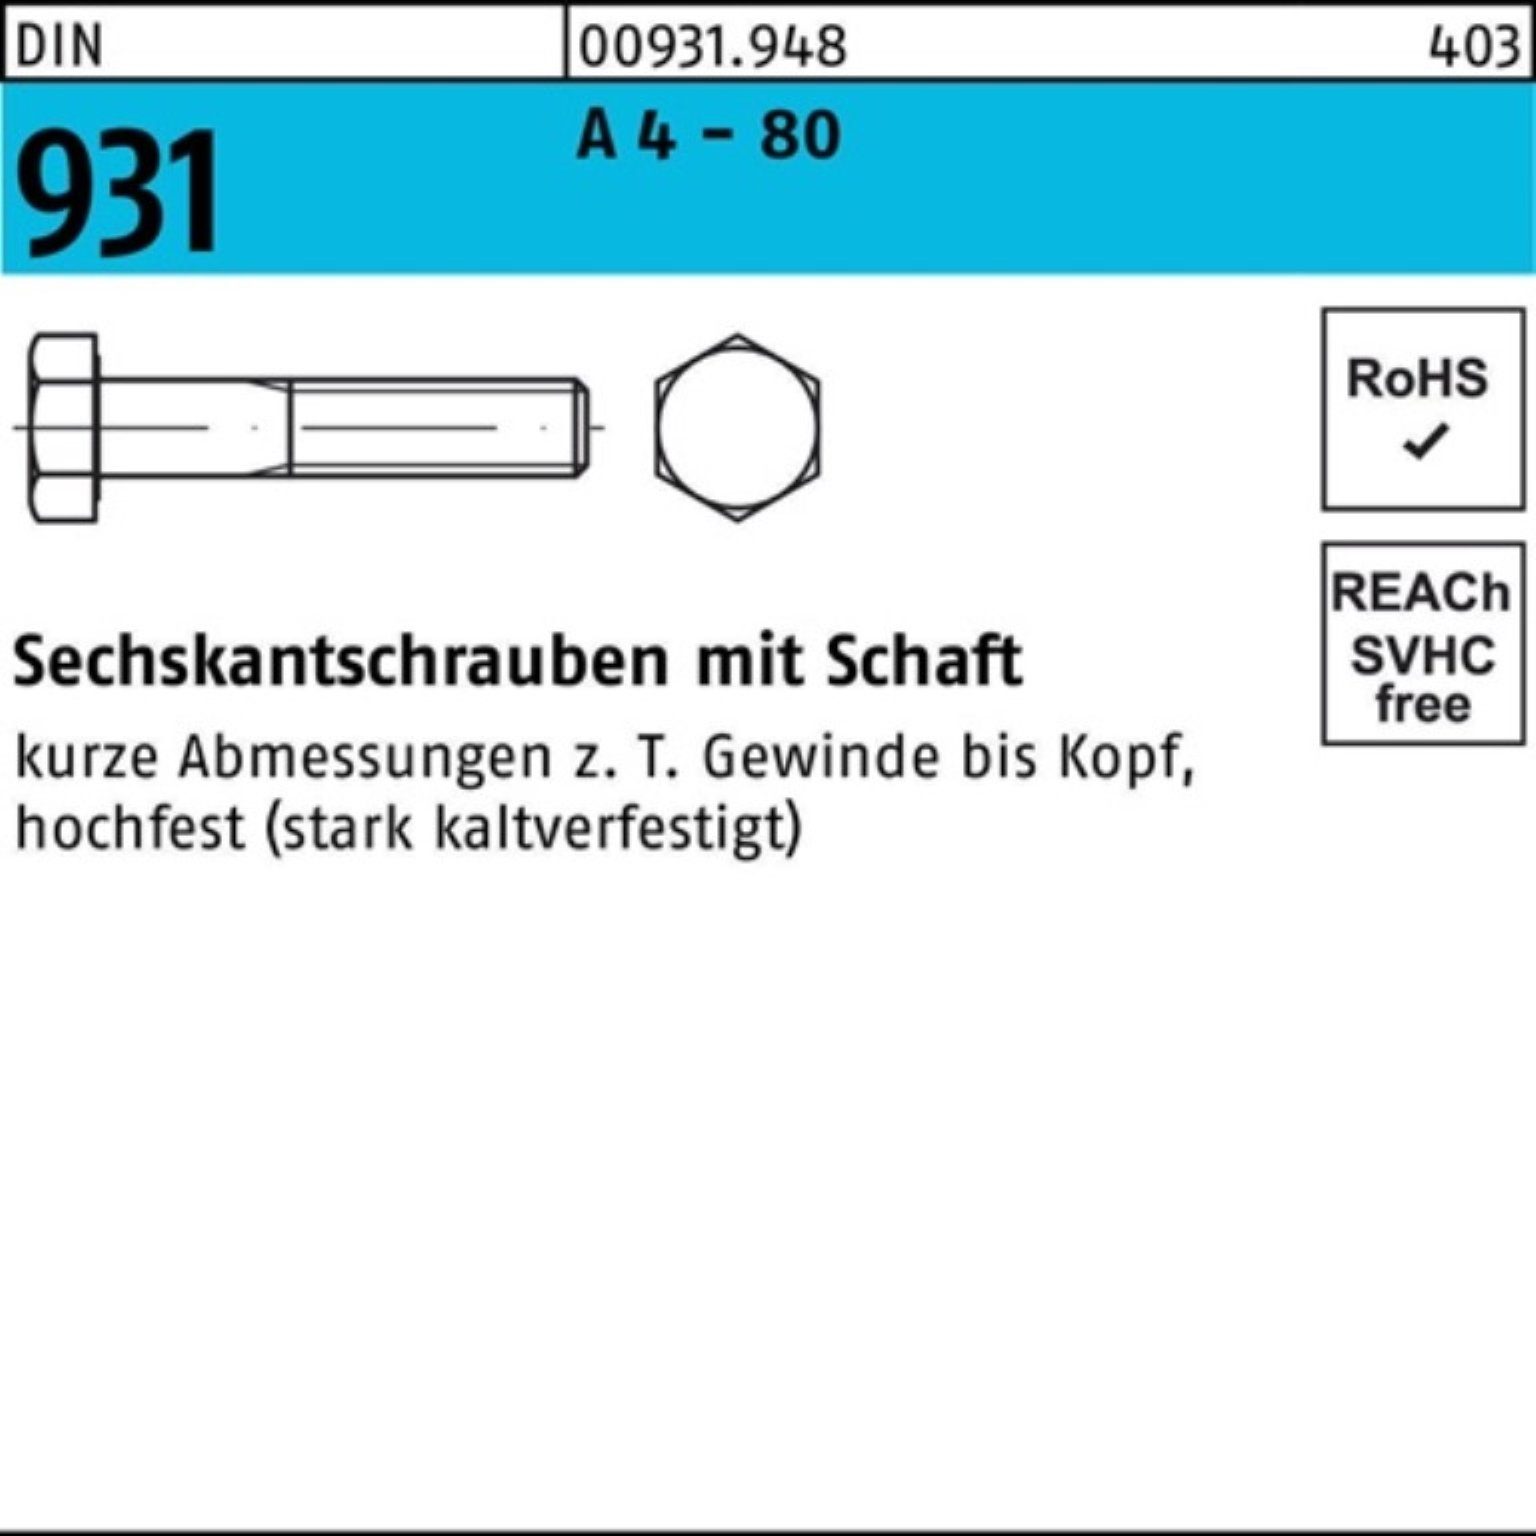 A Sechskantschraube Reyher 80 4 DIN Stüc 931 50 Pack M10x 100 - 100er Schaft Sechskantschraube